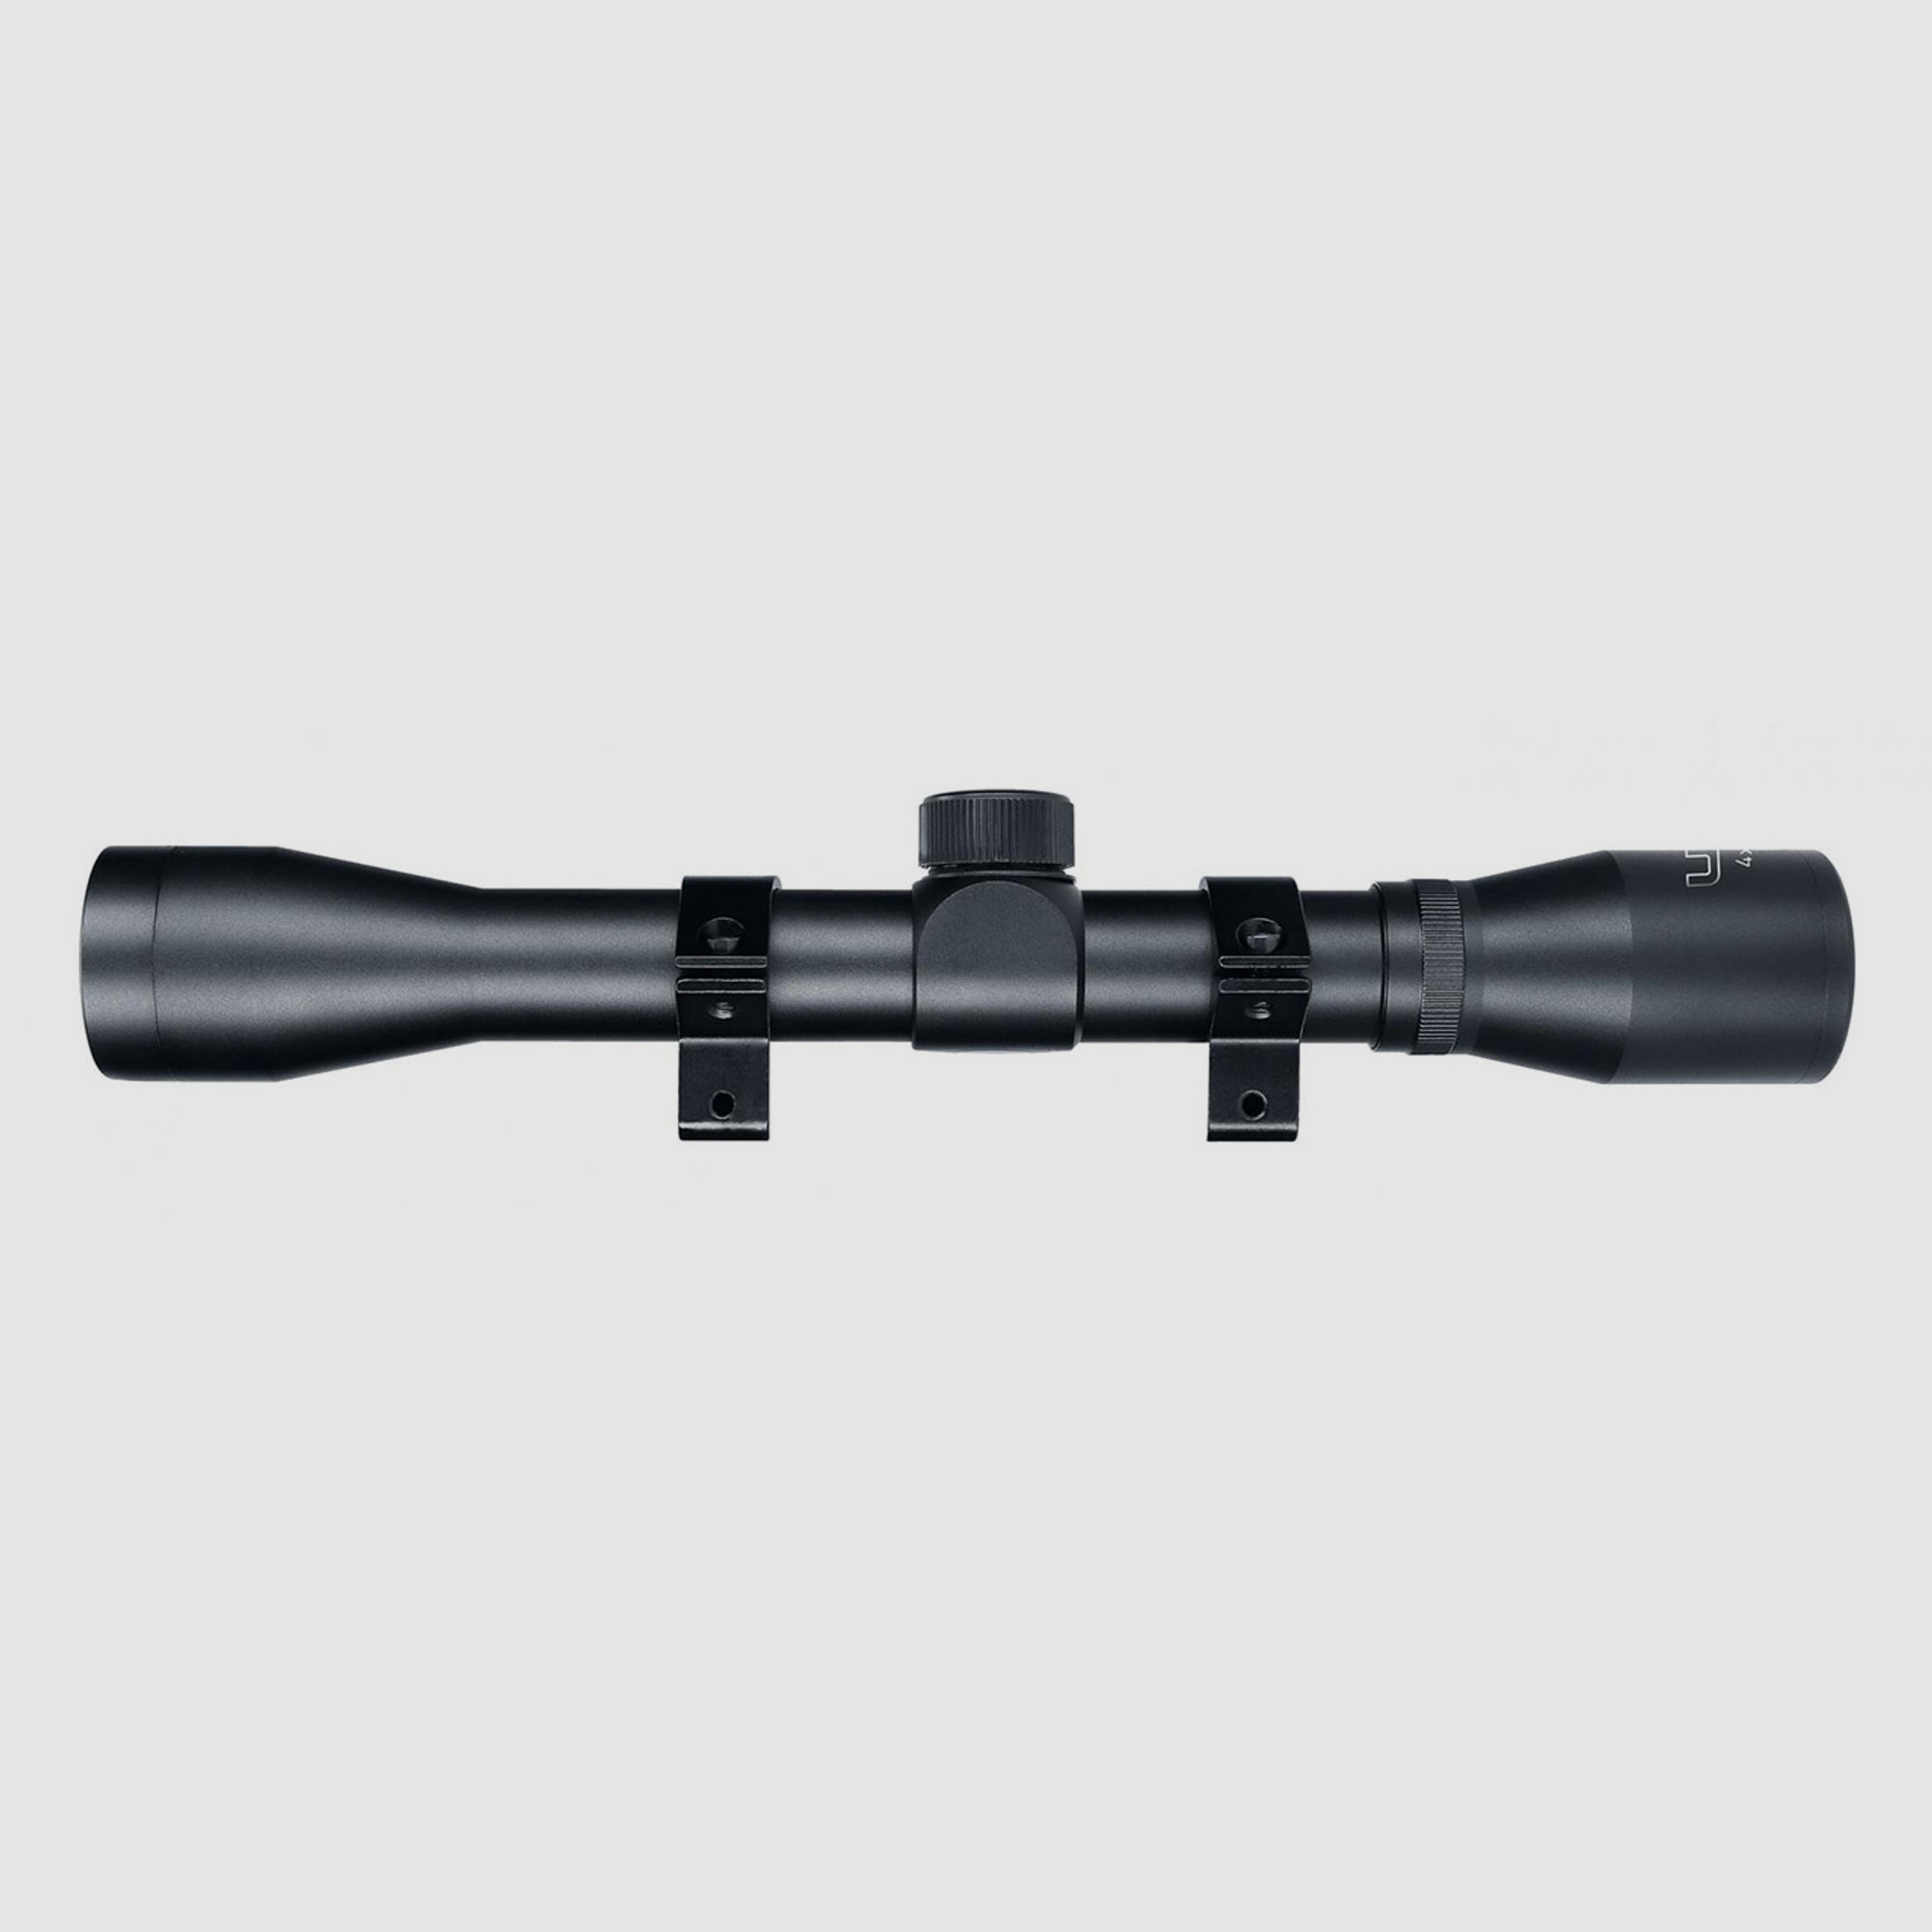 Zielfernrohr Umarex UX RS 4x32 Duplex Absehen inklusive Ringmontage fĂĽr 11 mm Prismenschiene